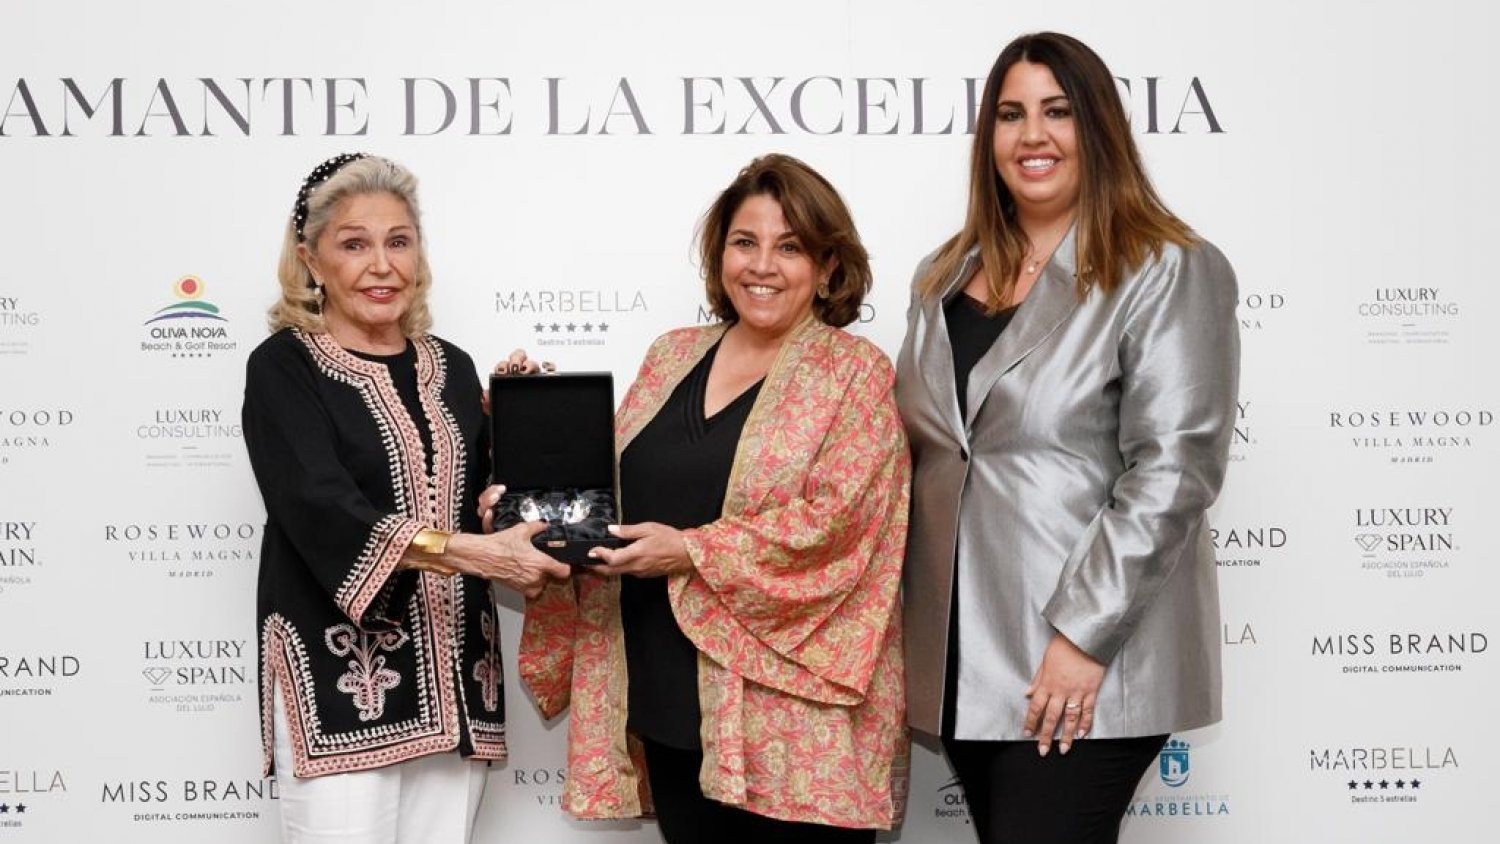 Marbella, galardonada con el Diamante de la Excelencia al Turismo Internacional